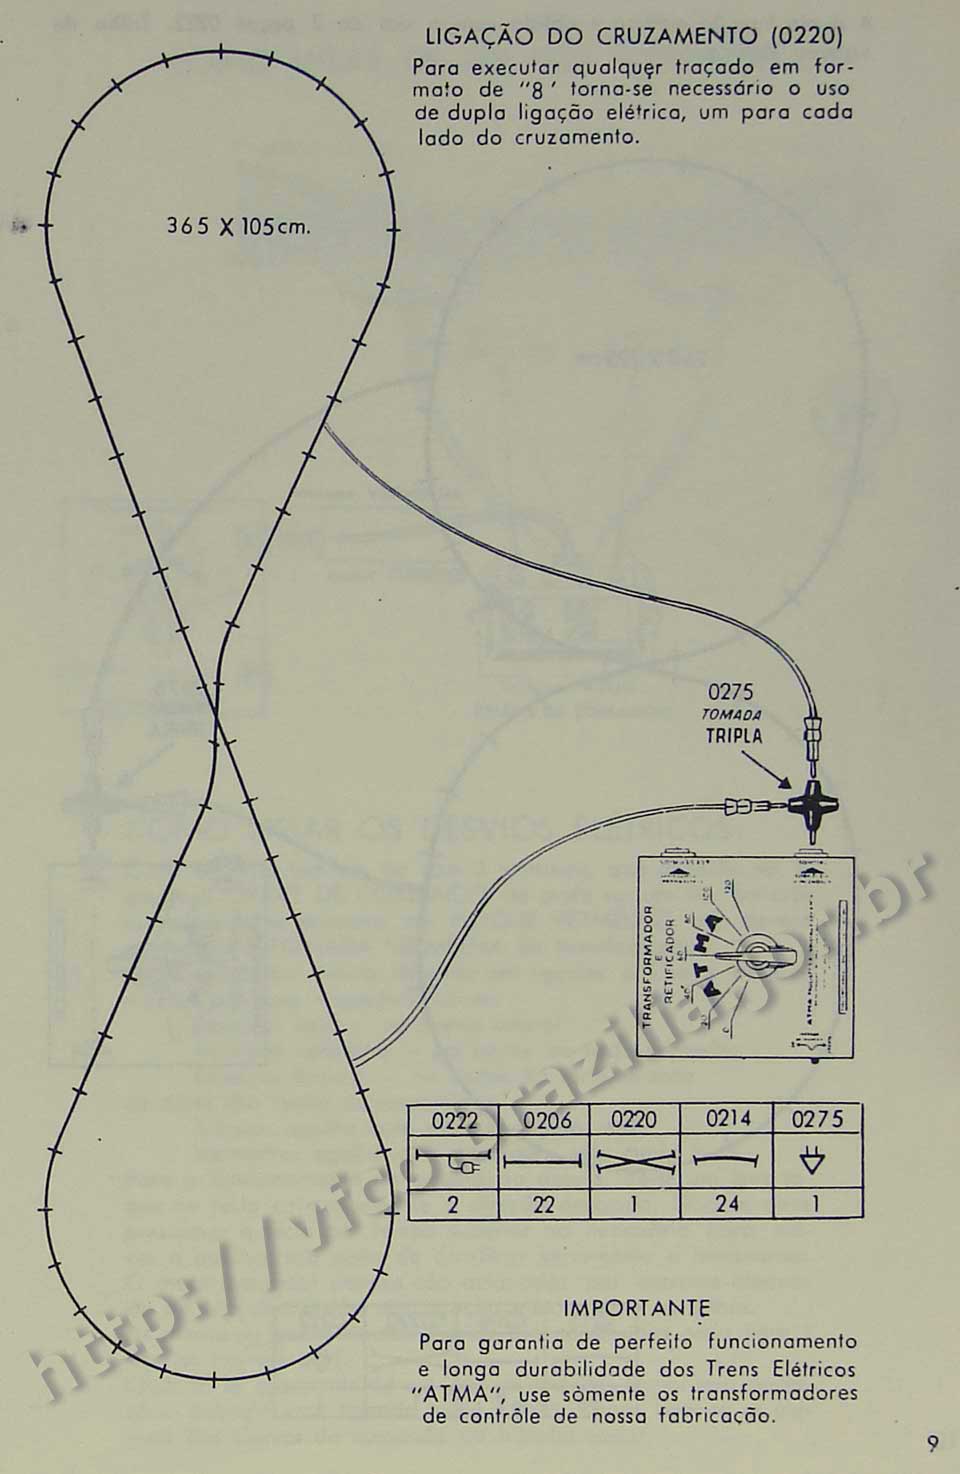 Ligações elétricas em traçado na forma de "8" usando trilho de cruzamento, na Página 9 do manual "Como montar e operar seu trem elétrico Atma" para maquete de ferreomodelismo